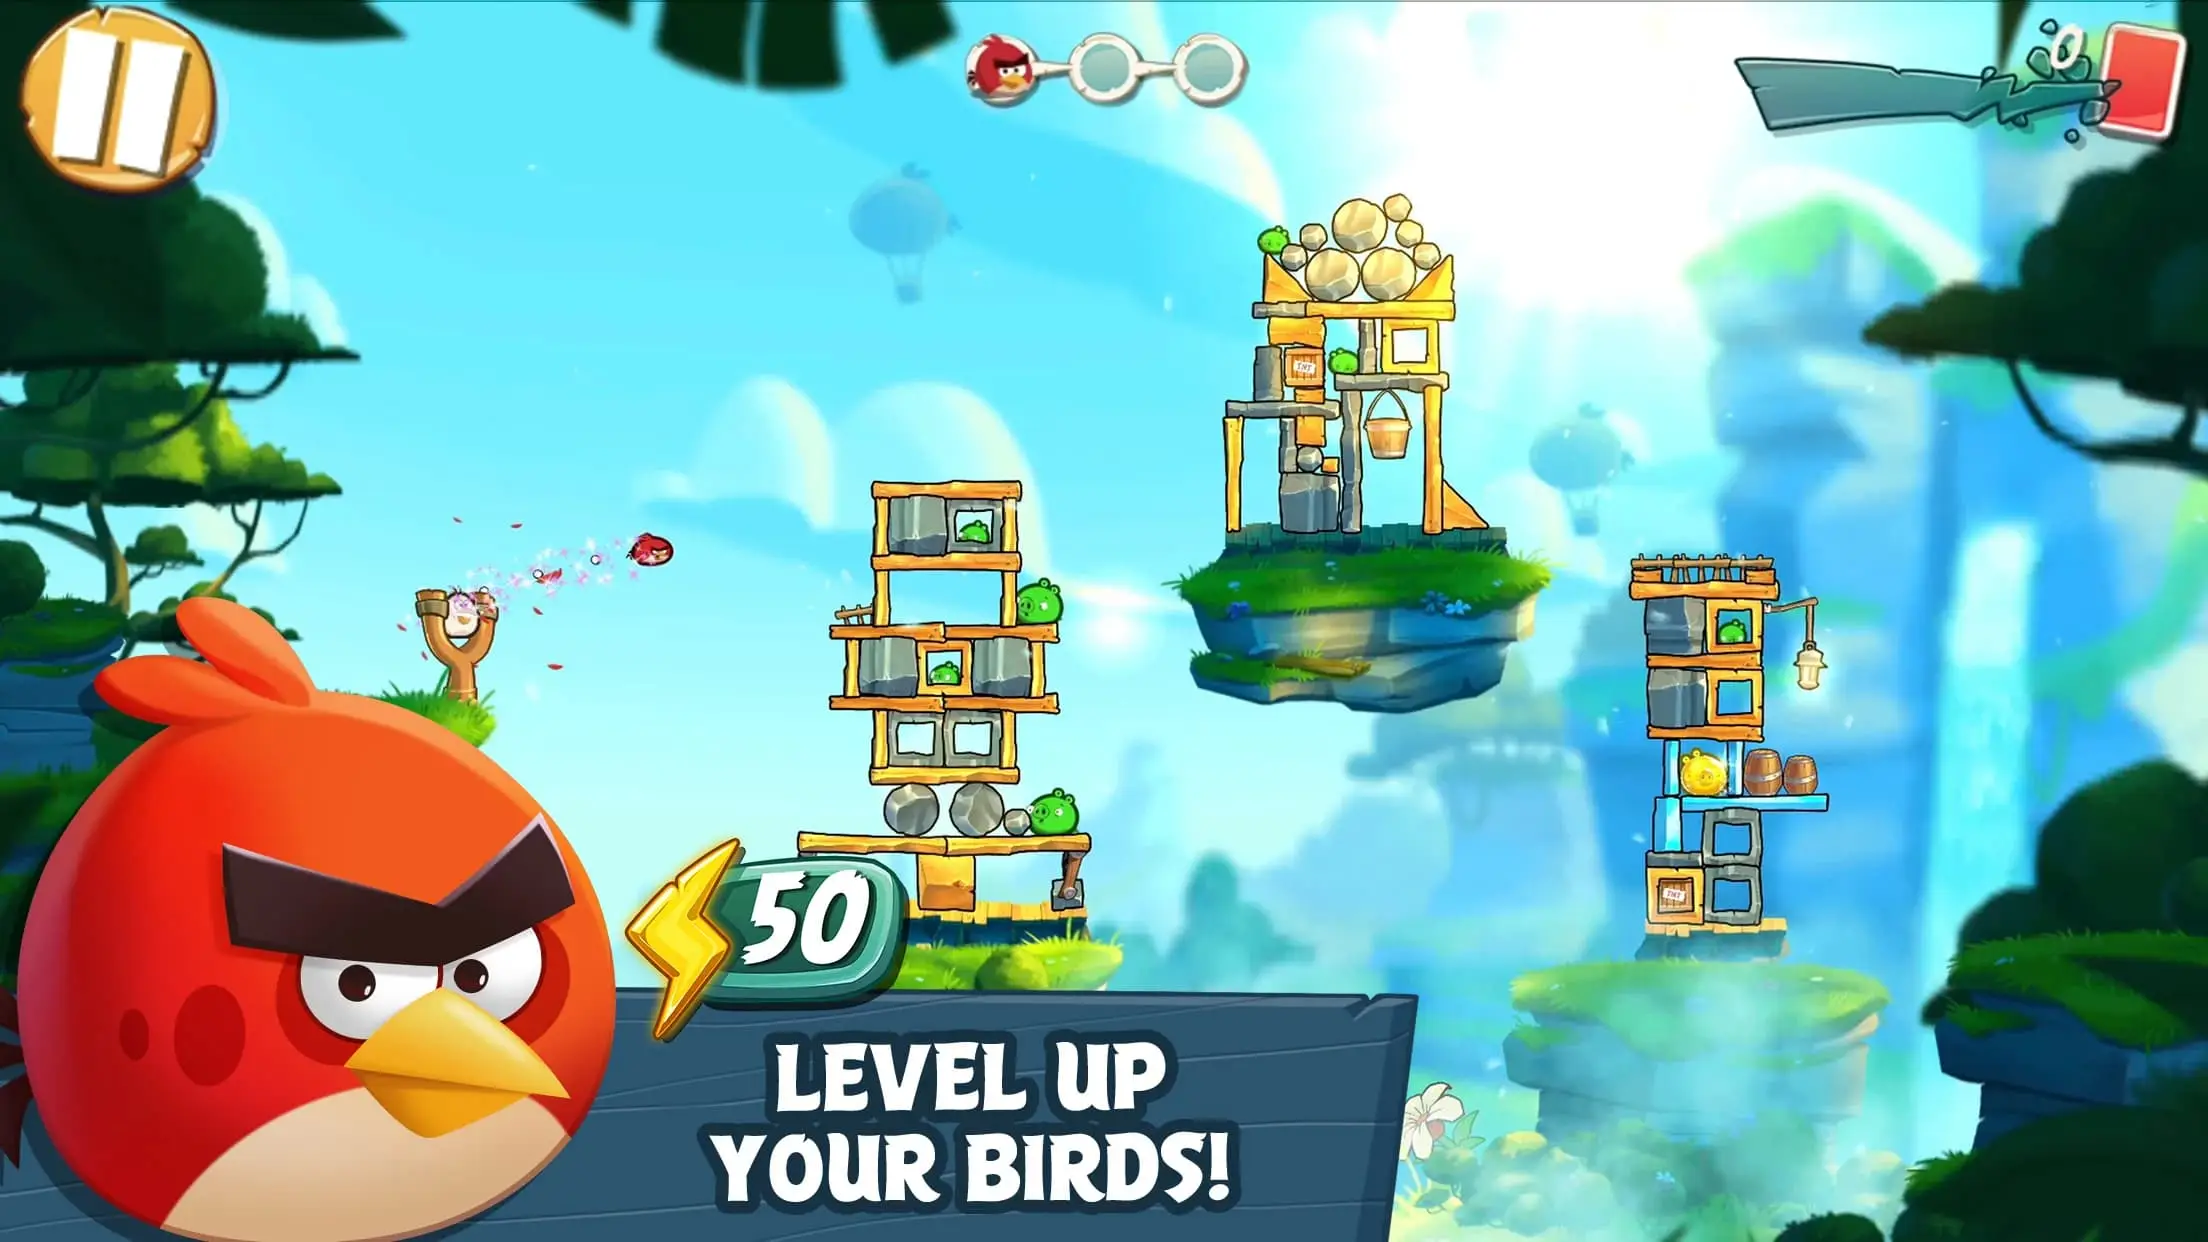 Điểm nổi bật của Angry Birds 2